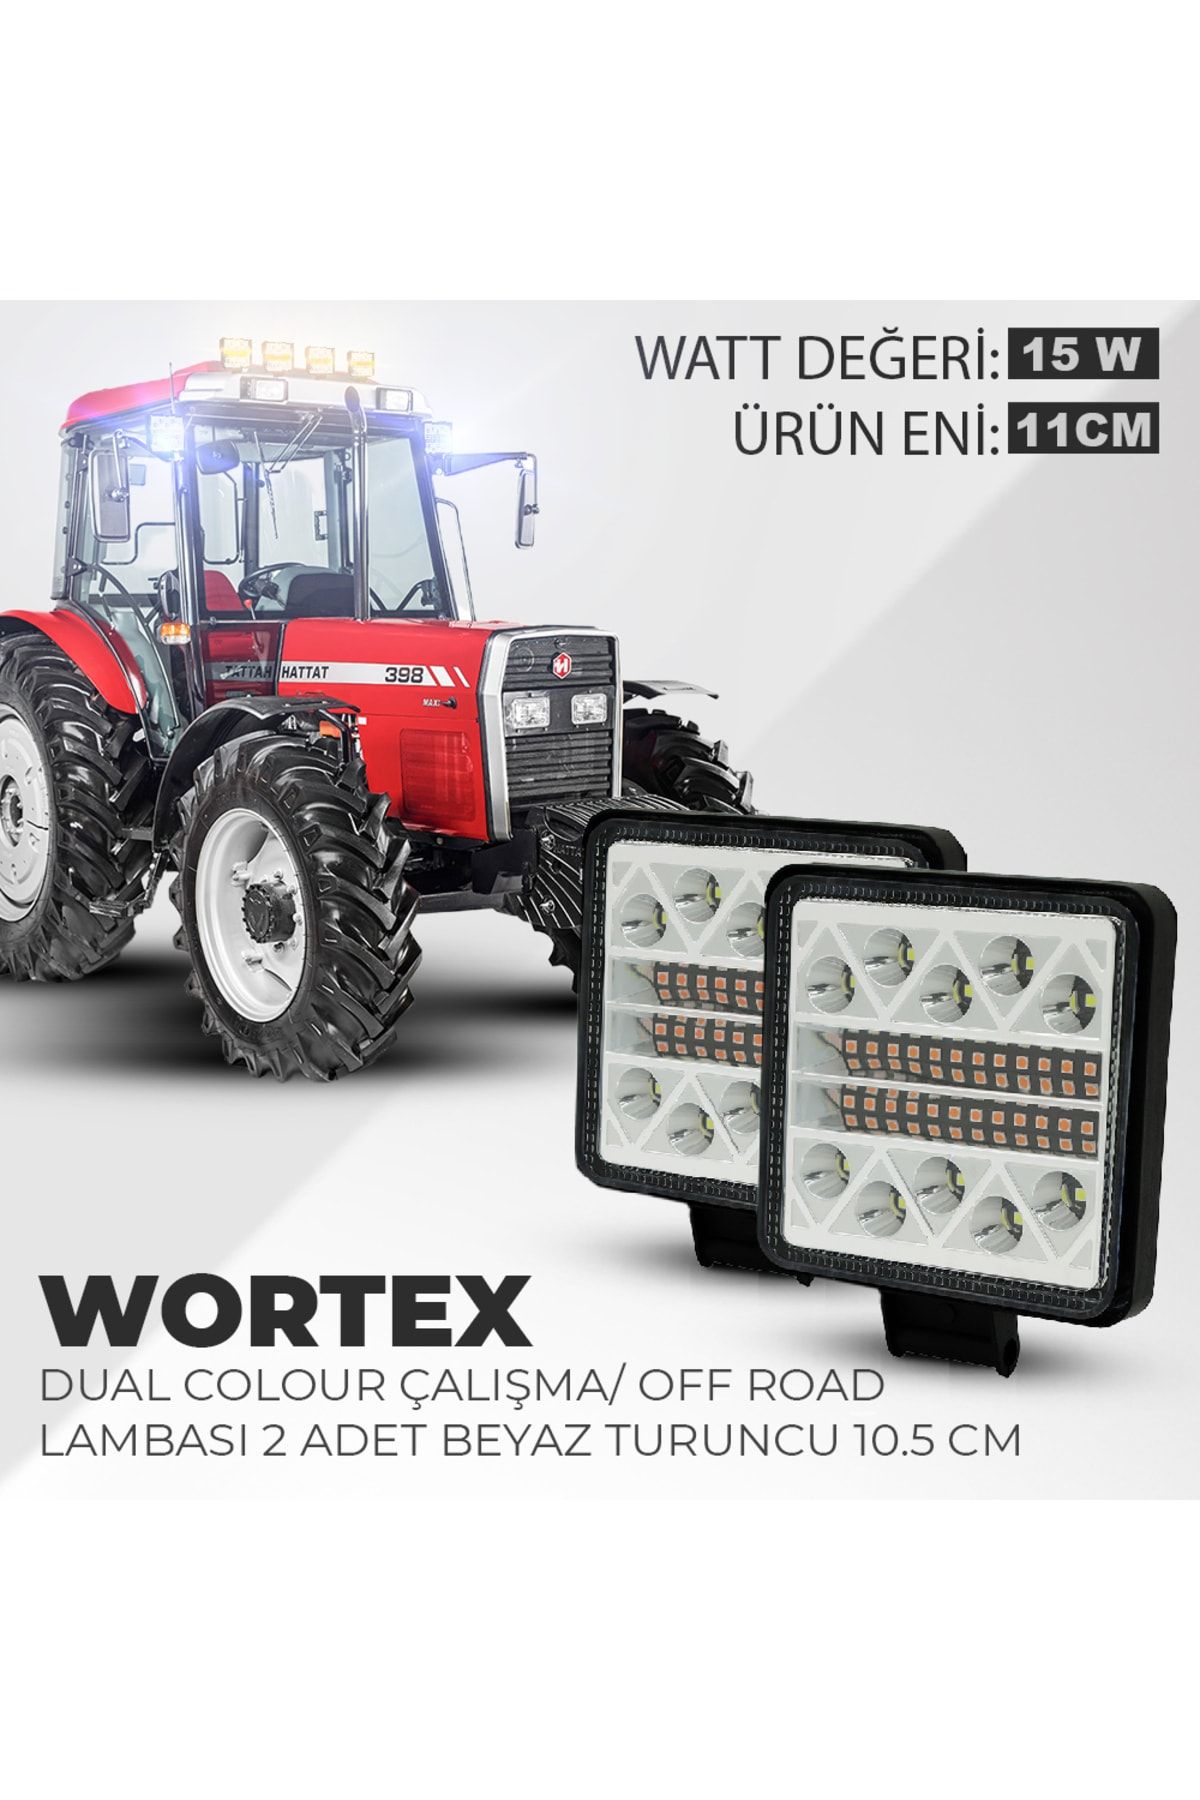 C9 Dual Colour Wortex Çalışma Ve Off Road Lambası Beyaz - Turuncu 10.5 Cm (2 ADET)